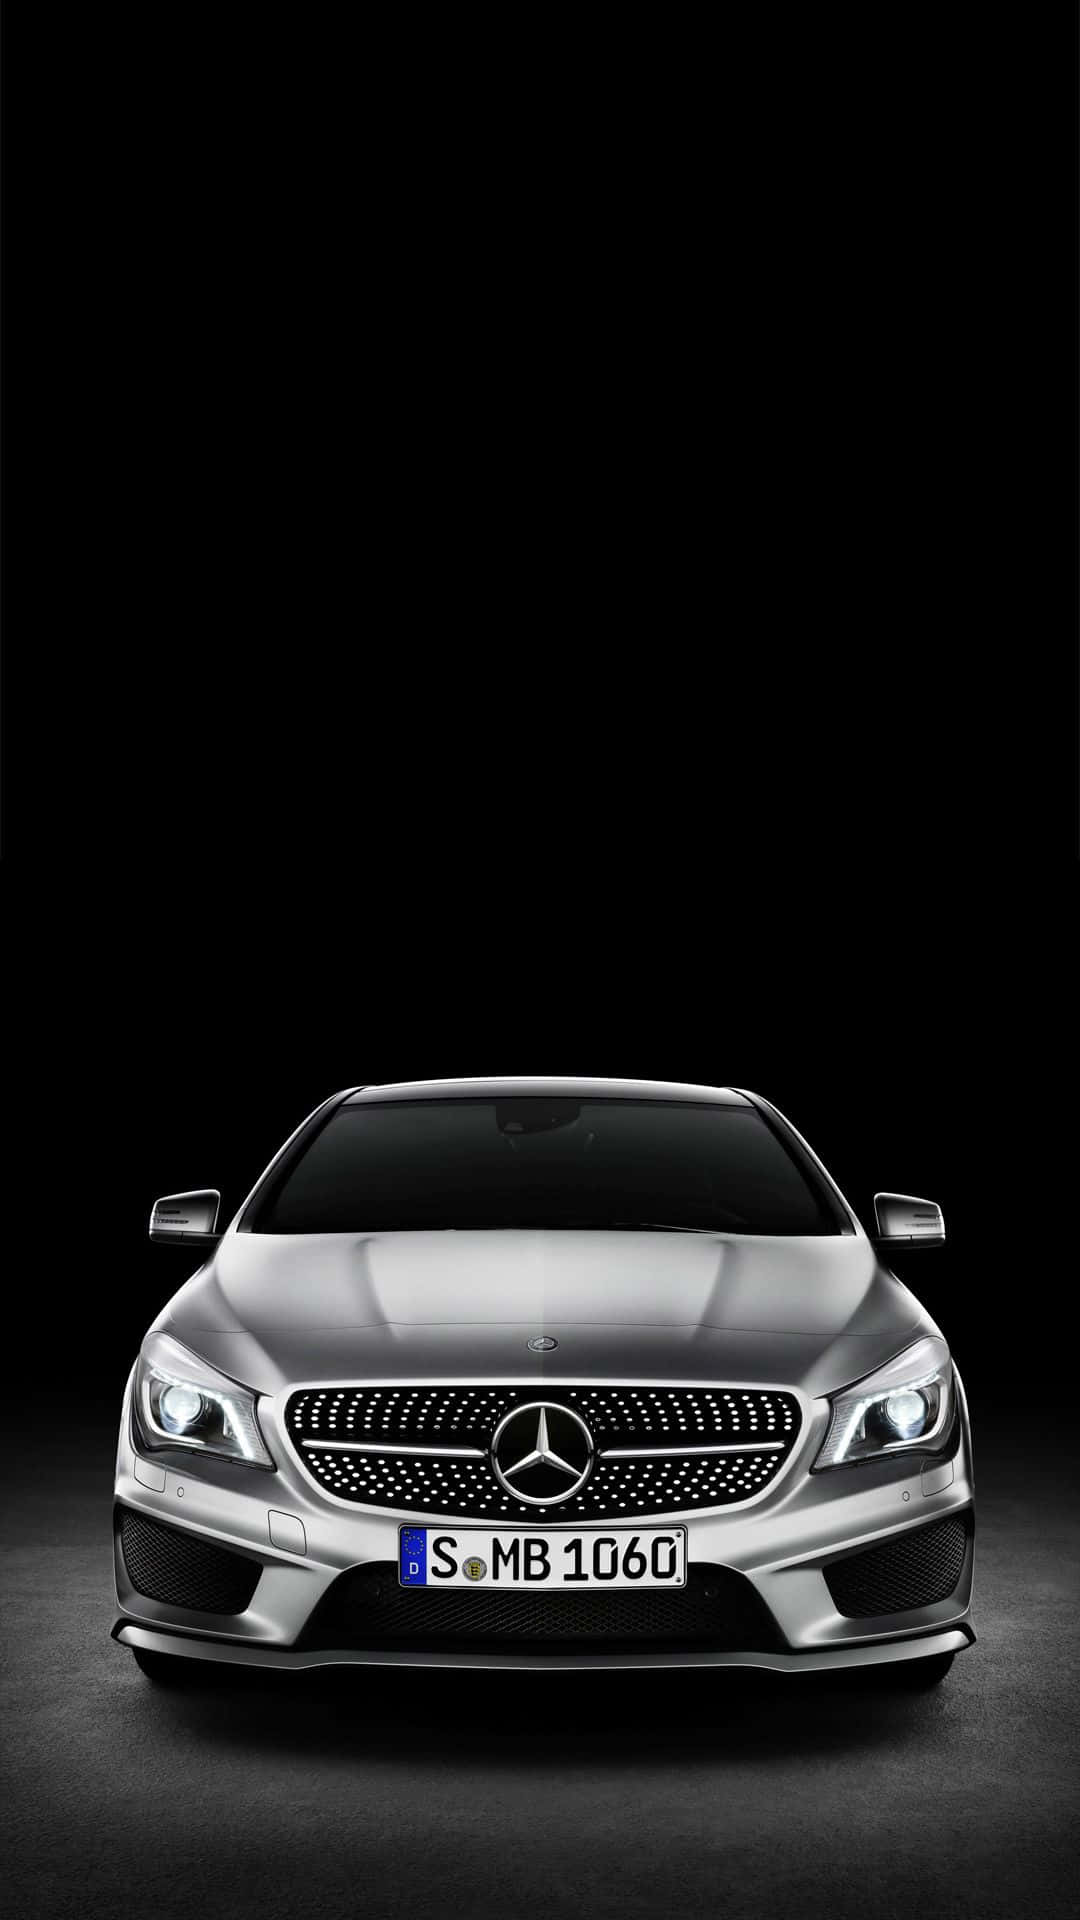 Caption: Magnificent Mercedes Benz CLA-Class Wallpaper